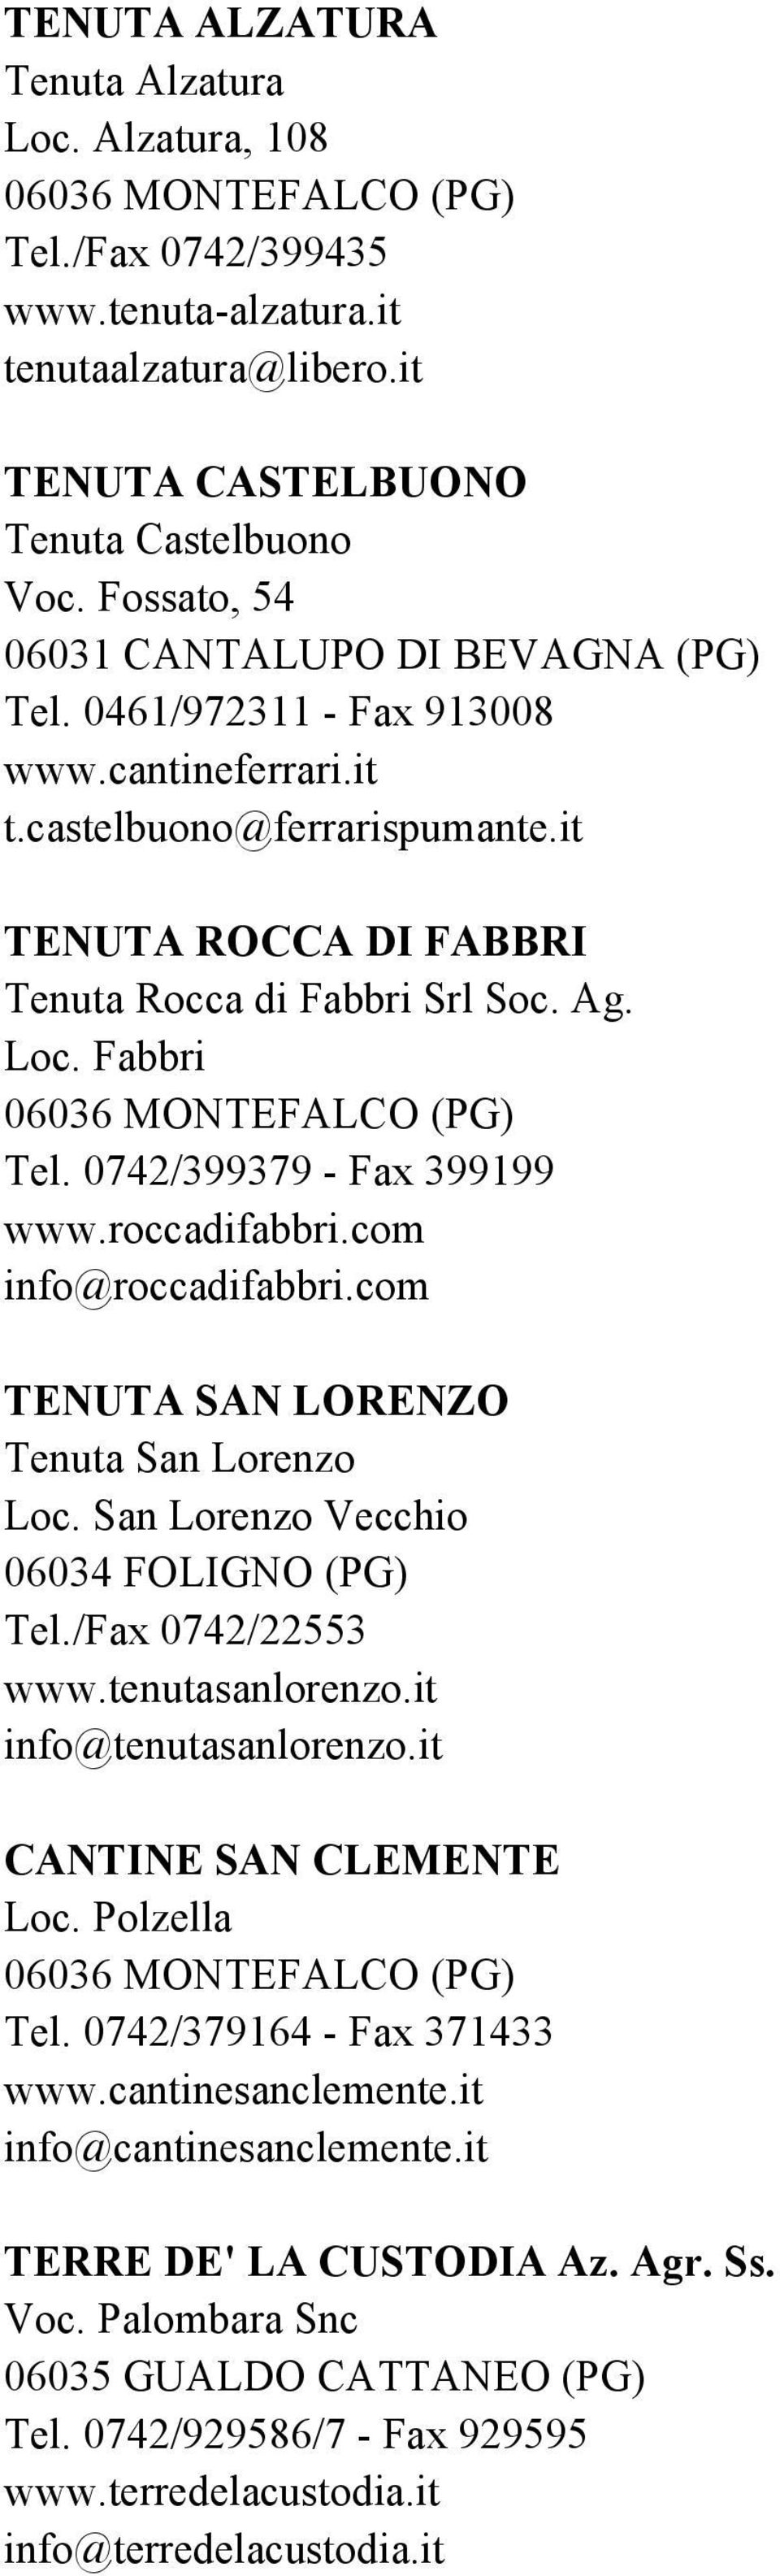 Fabbri Tel. 0742/399379 - Fax 399199 www.roccadifabbri.com info@roccadifabbri.com TENUTA SAN LORENZO Tenuta San Lorenzo Loc. San Lorenzo Vecchio 06034 FOLIGNO (PG) Tel./Fax 0742/22553 www.